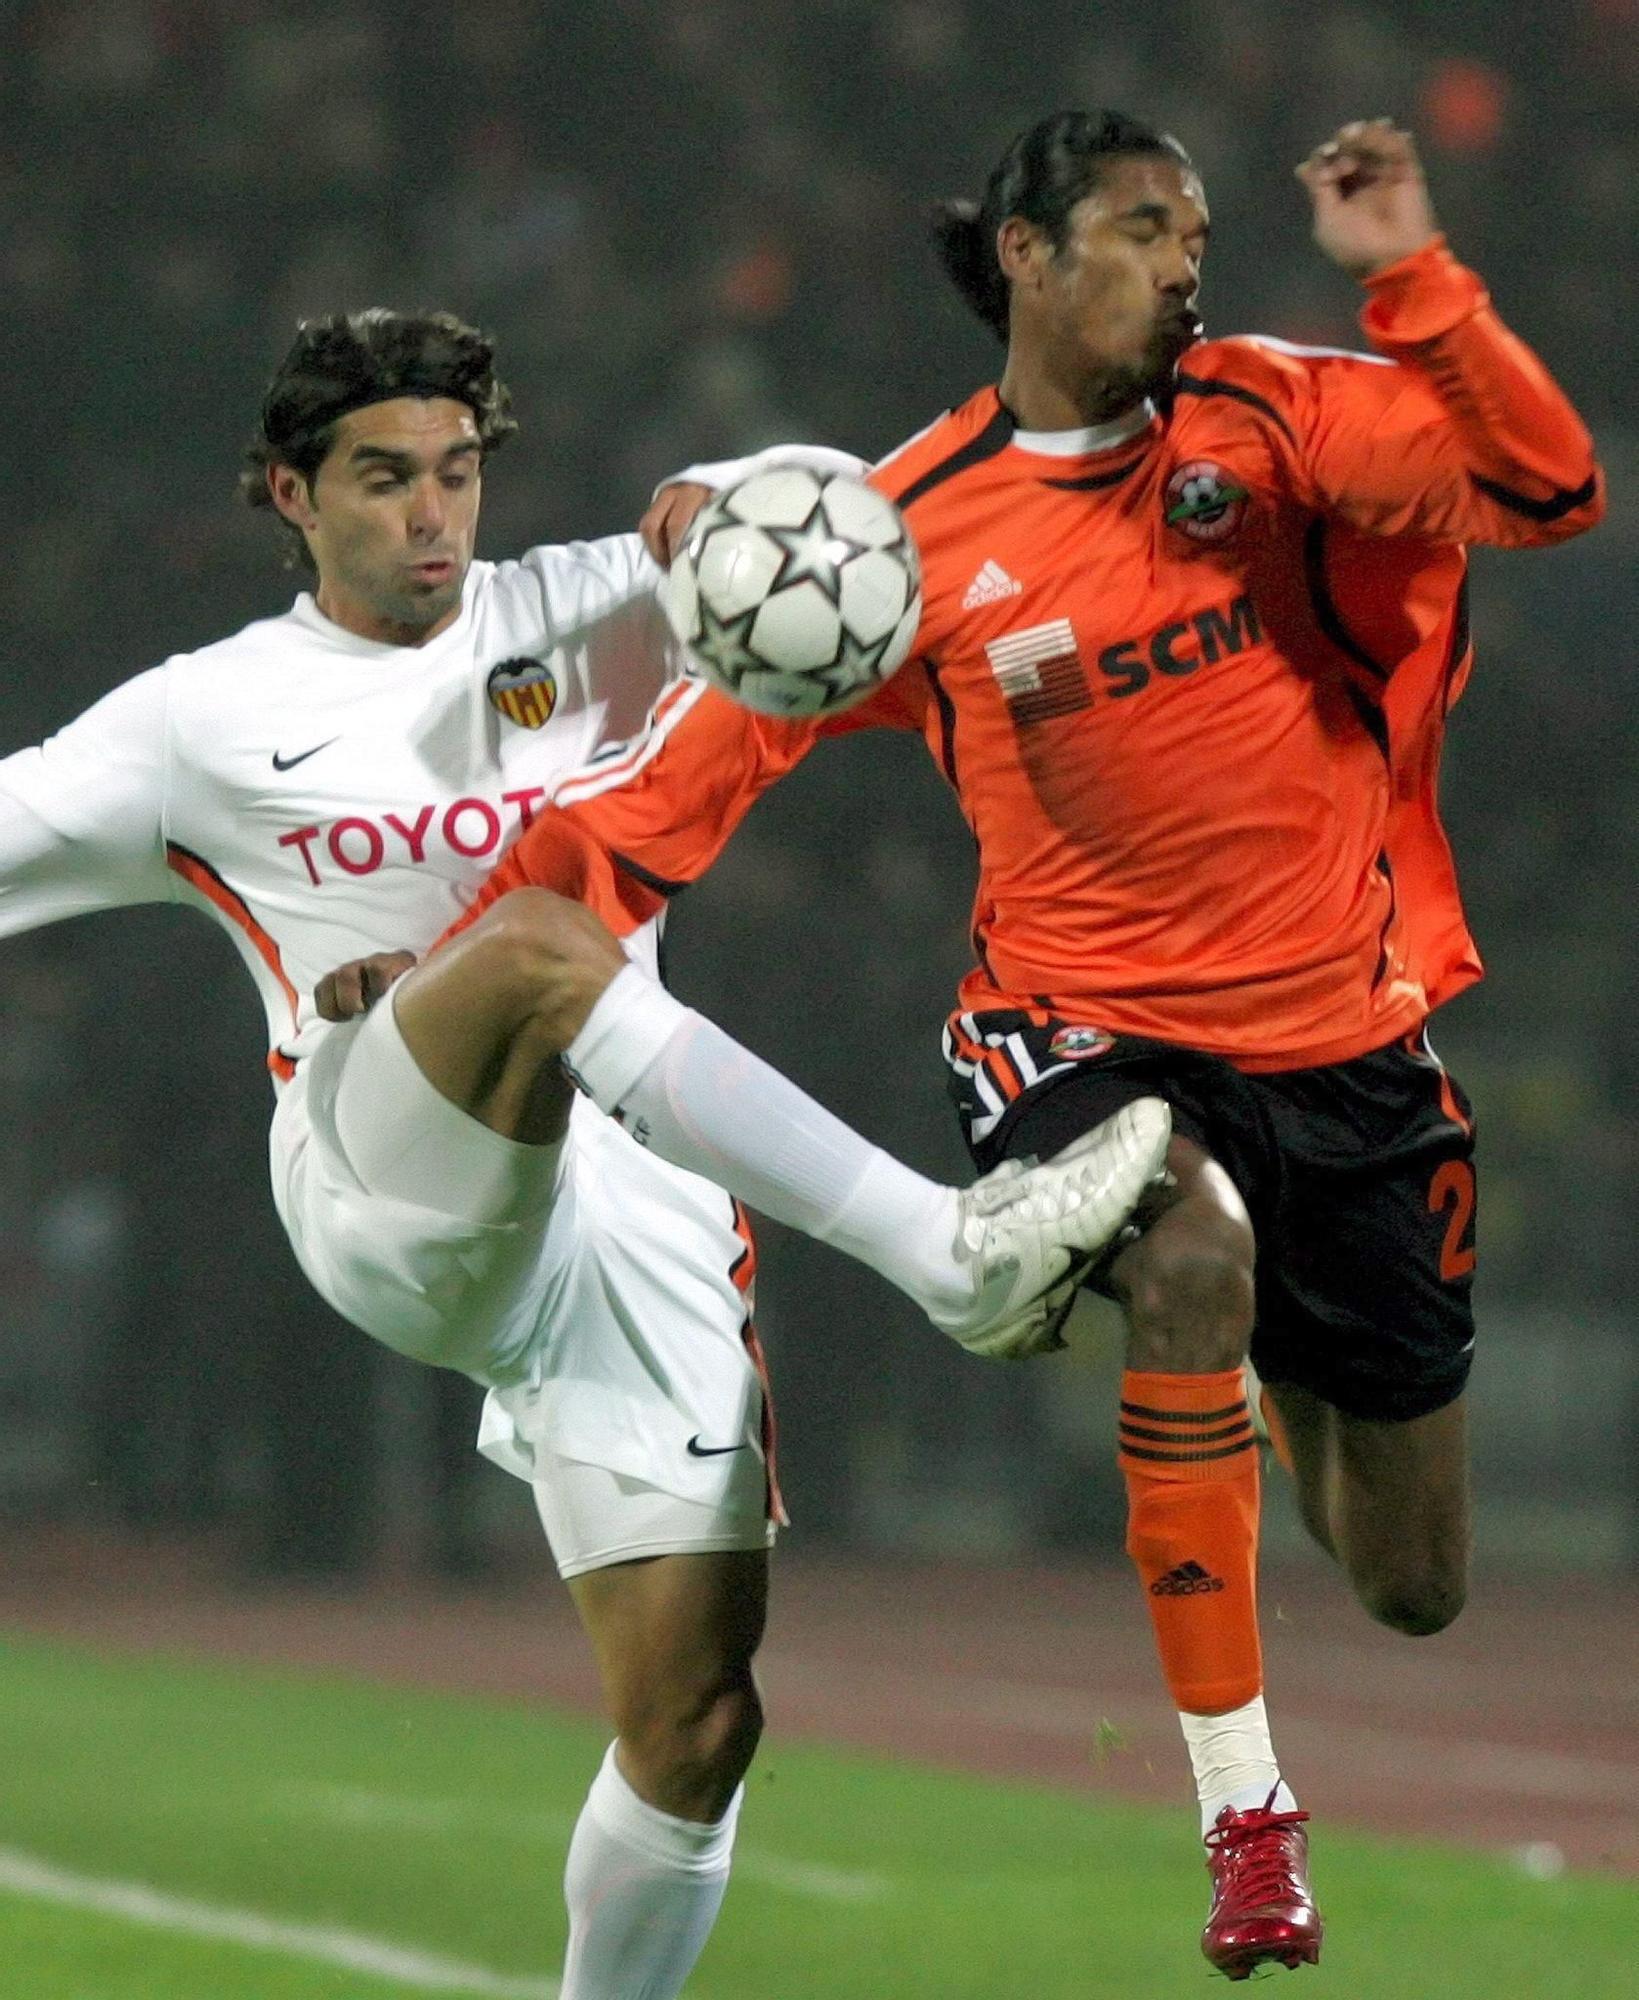 Recordamos la visita del Valencia CF a Ucrania en 2006 para jugar contra el  FC SHAKHTAR DONETSK